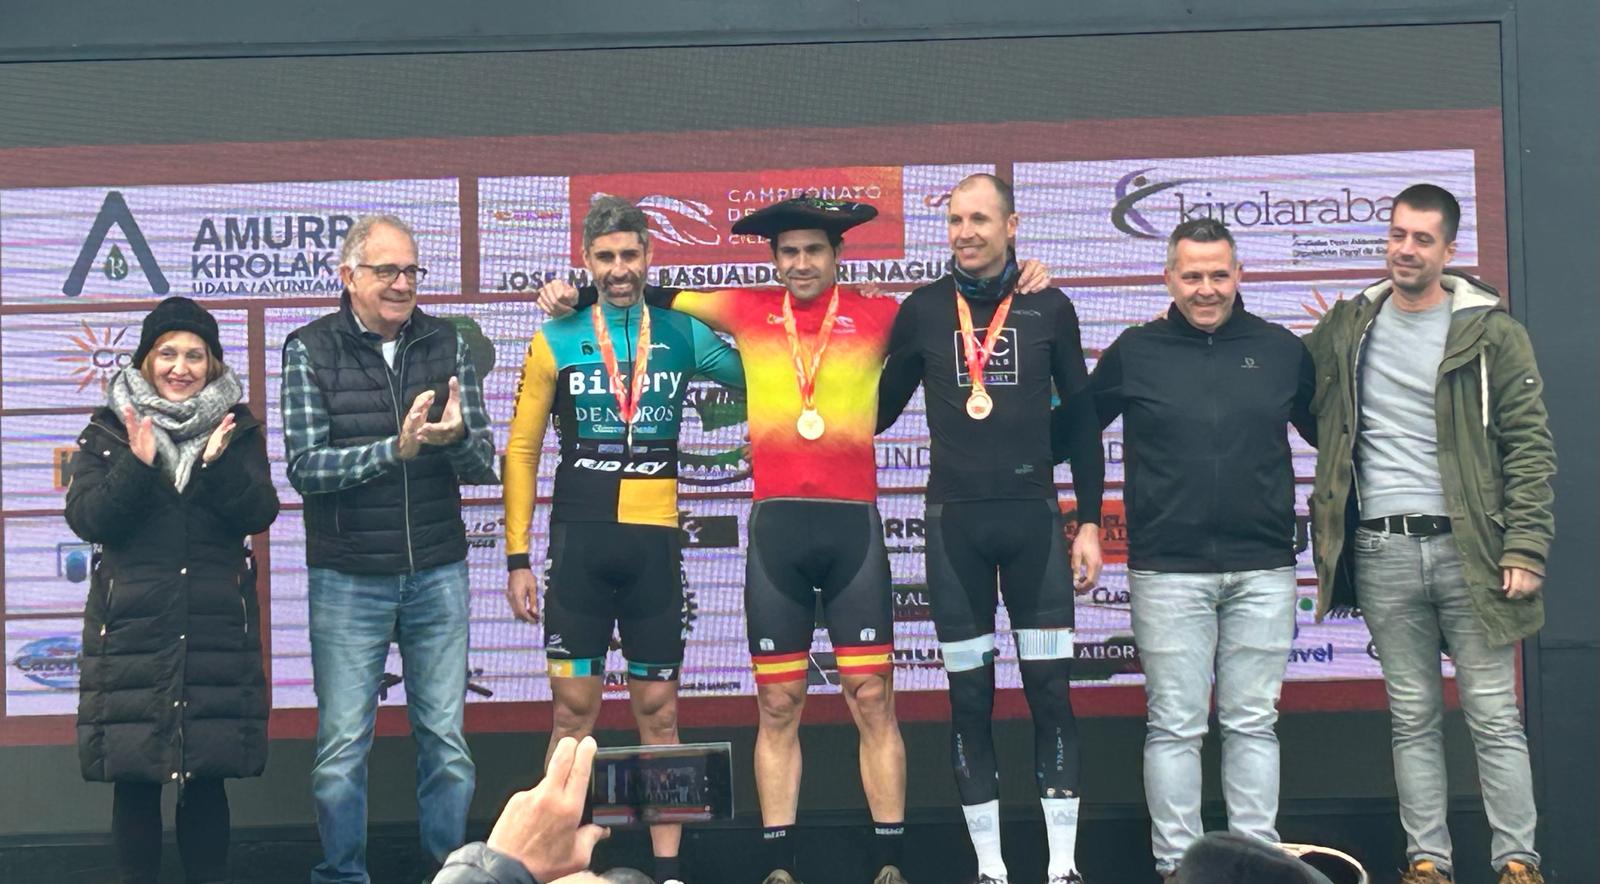 Cantabria logra un oro y tres platas el sábado en los Campeonatos de España de Ciclocross en Amurrio